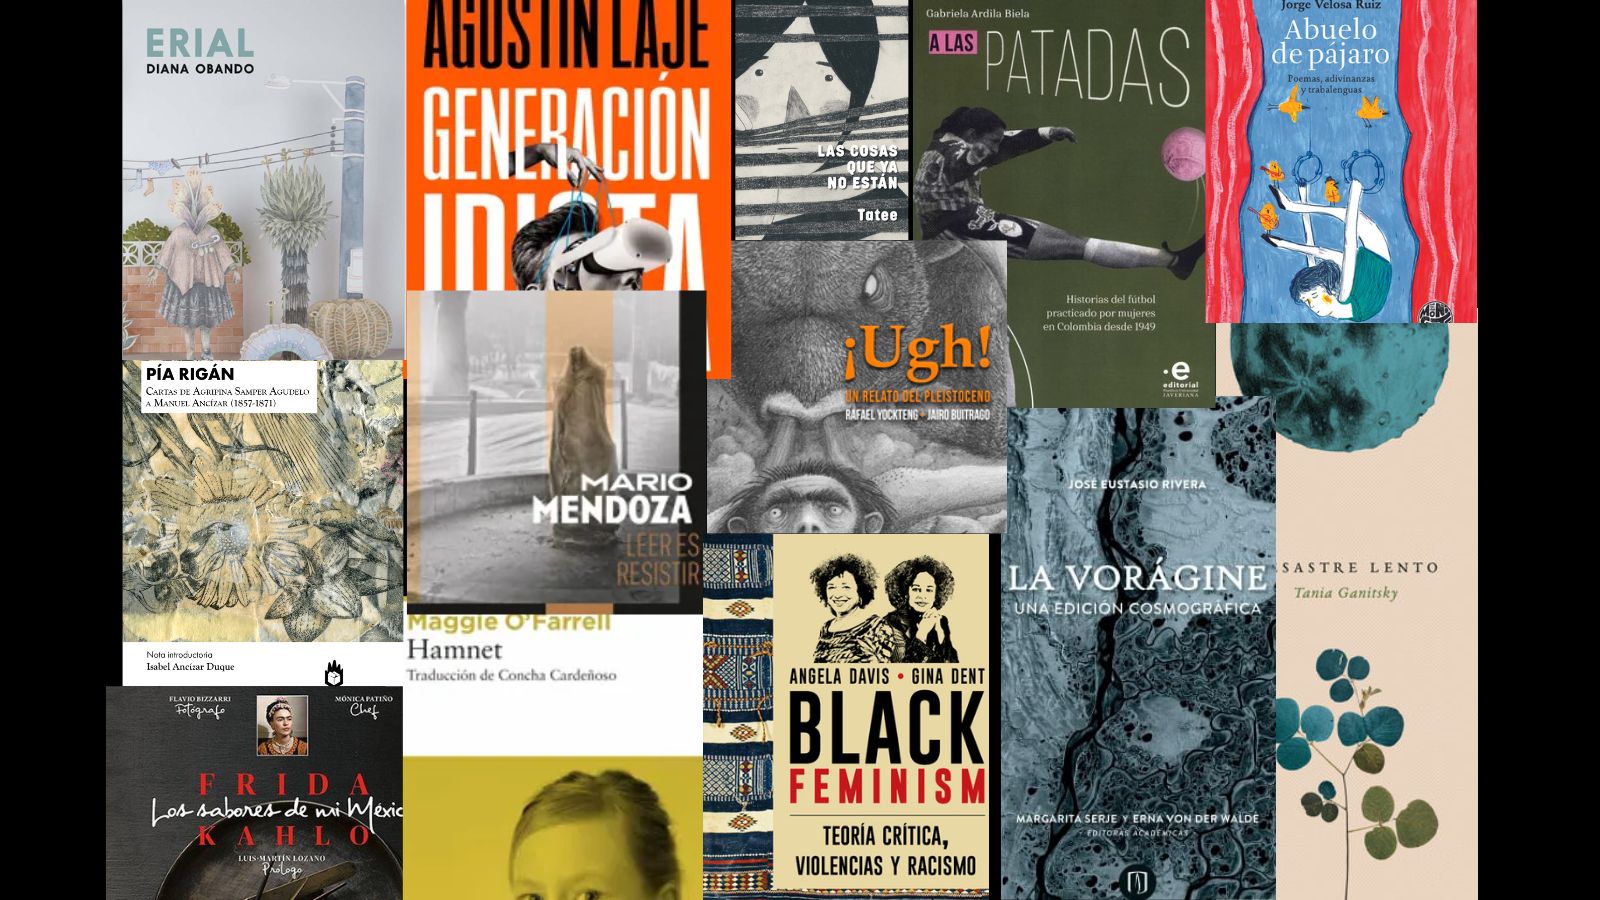 Cómo hacer que te pasen cosas buenas', el libro más vendido en Colombia -  Música y Libros - Cultura 